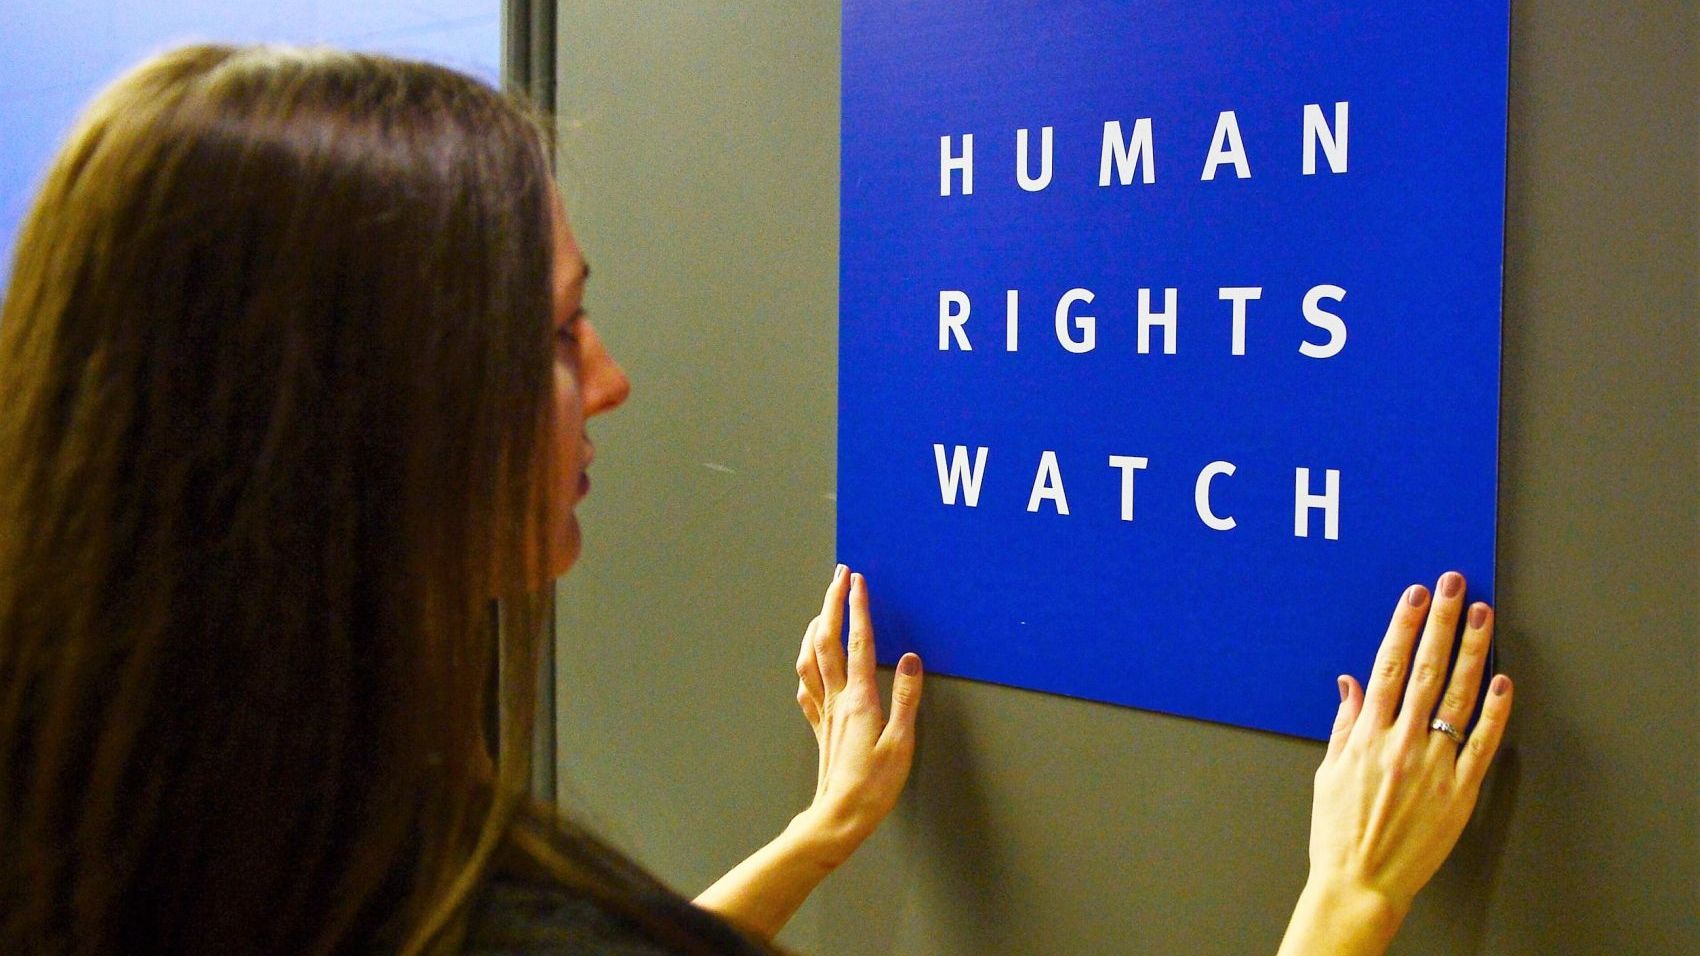 المغرب يرد على تقرير لـ هيومن رايتس ووتش  حول حقوق الإنسان بالمملكة   www.le360.ma